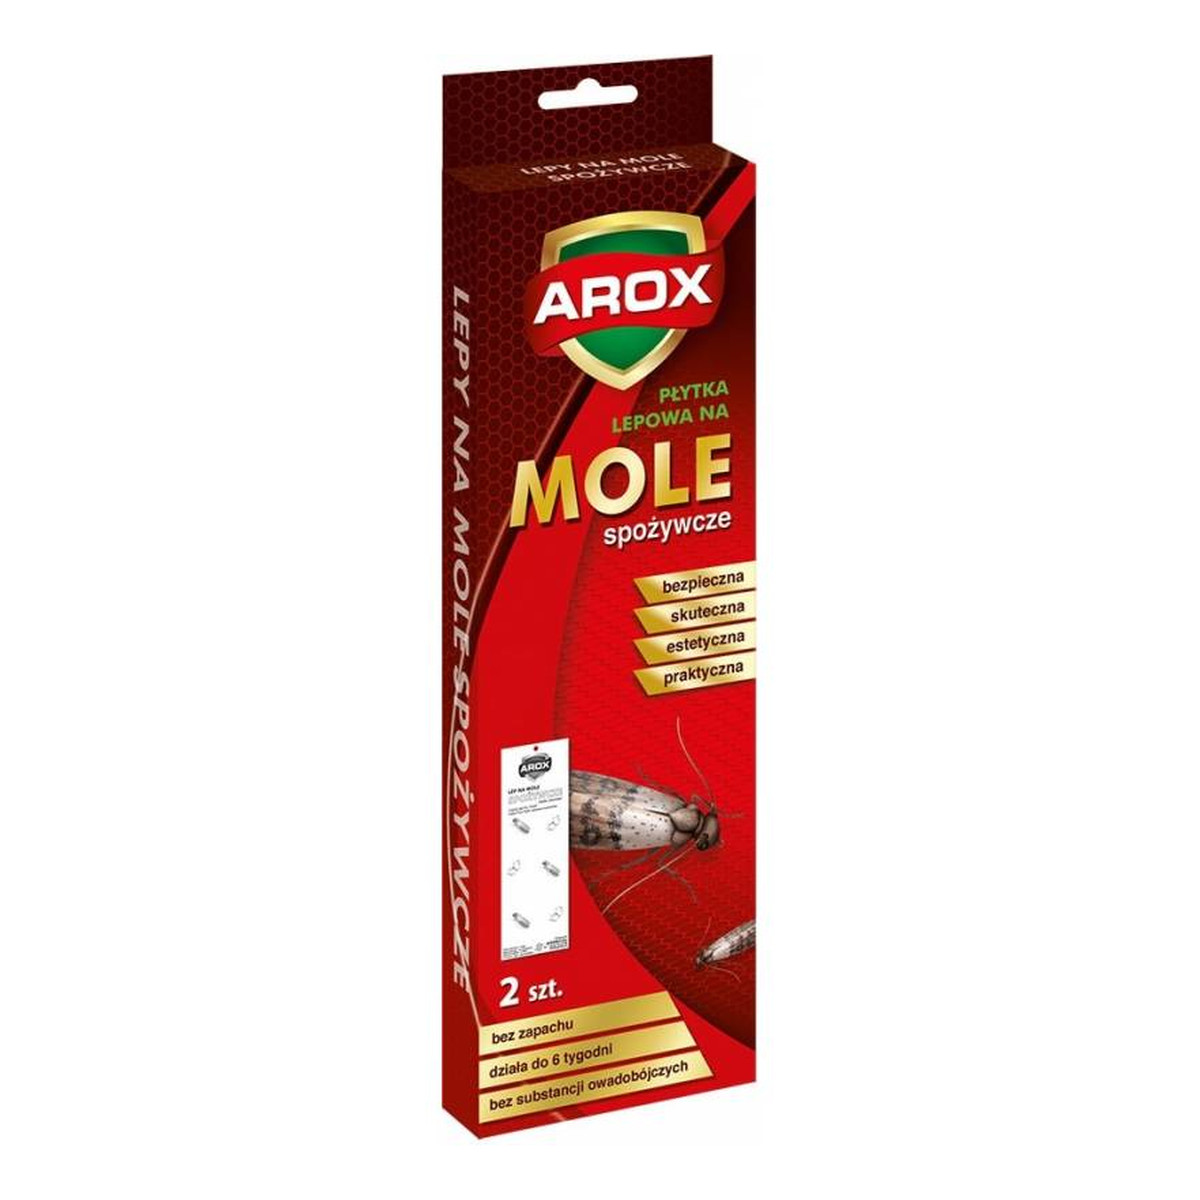 Arox Płytka na mole spożywcze, 2 szt